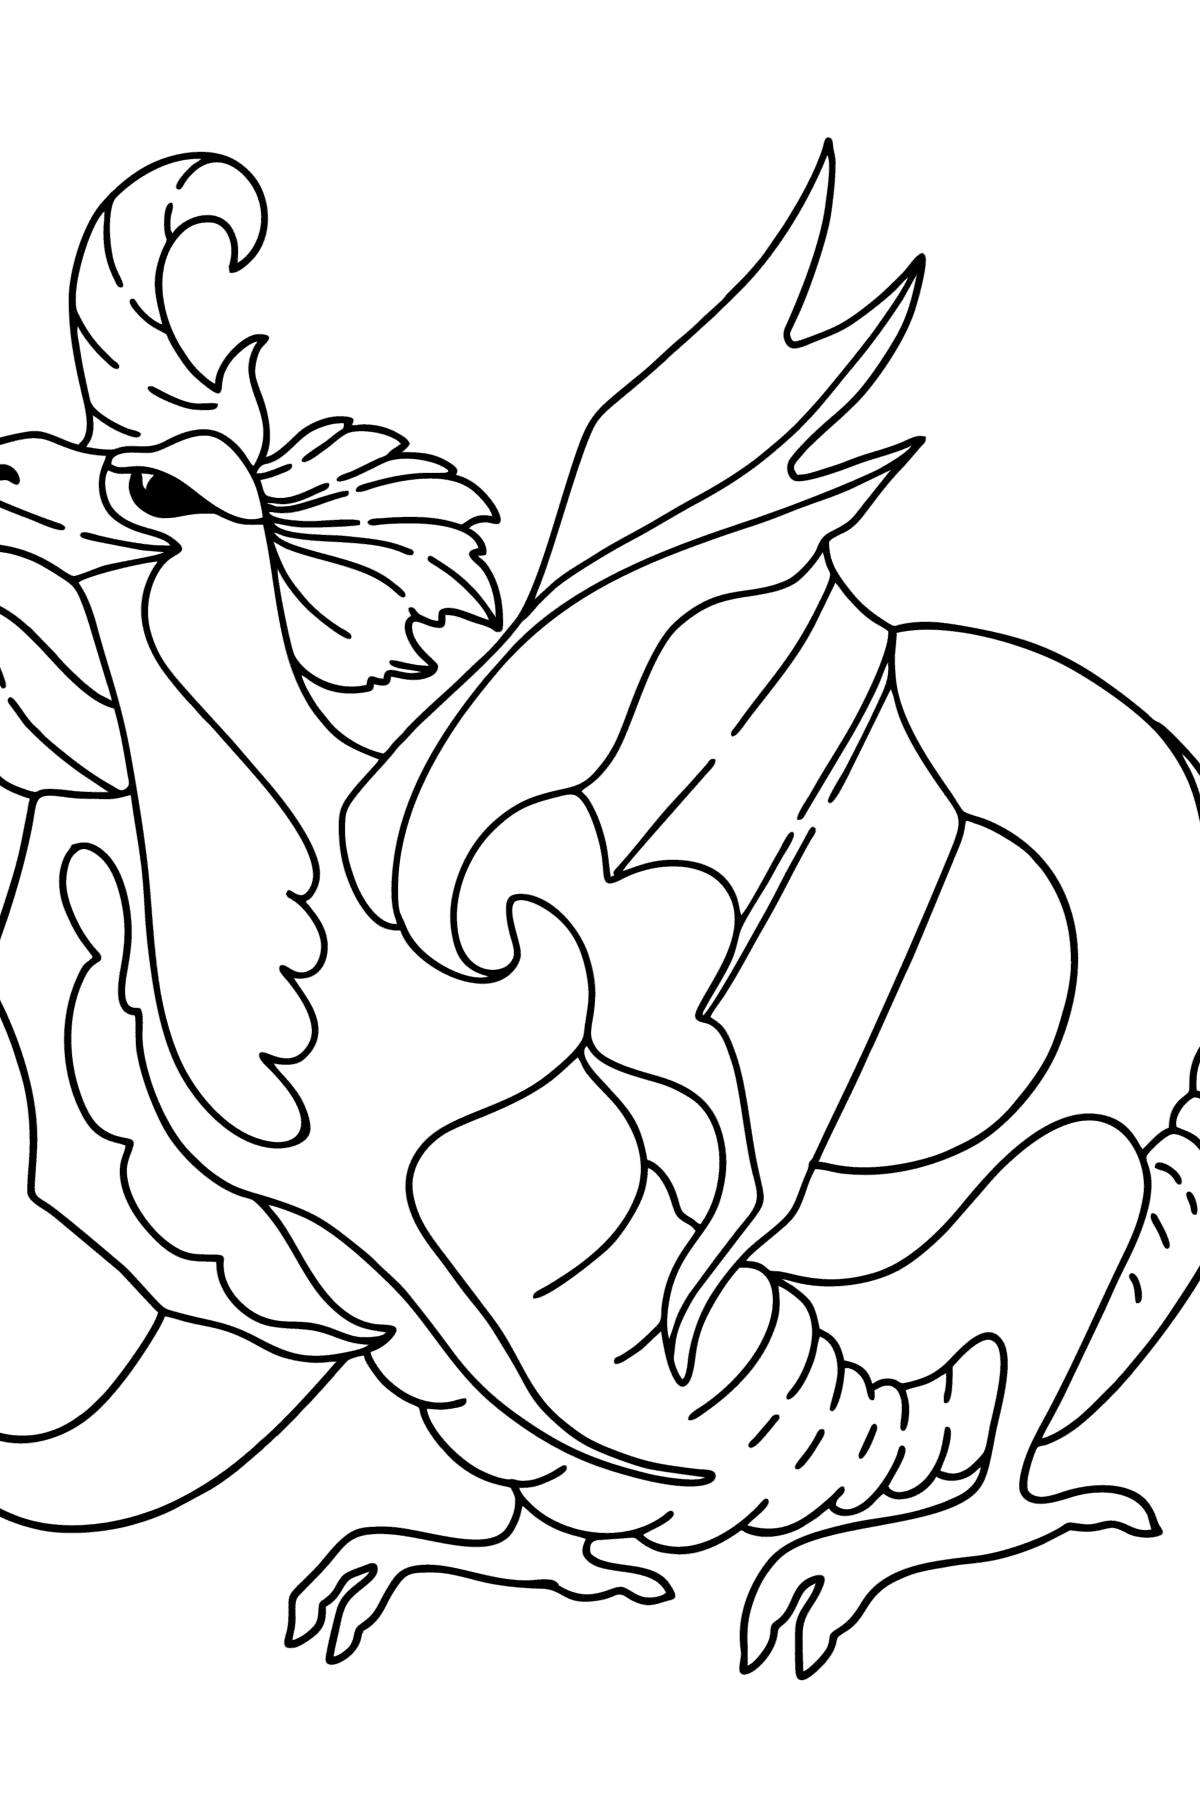 Desen de colorat dragon norocos - Desene de colorat pentru copii